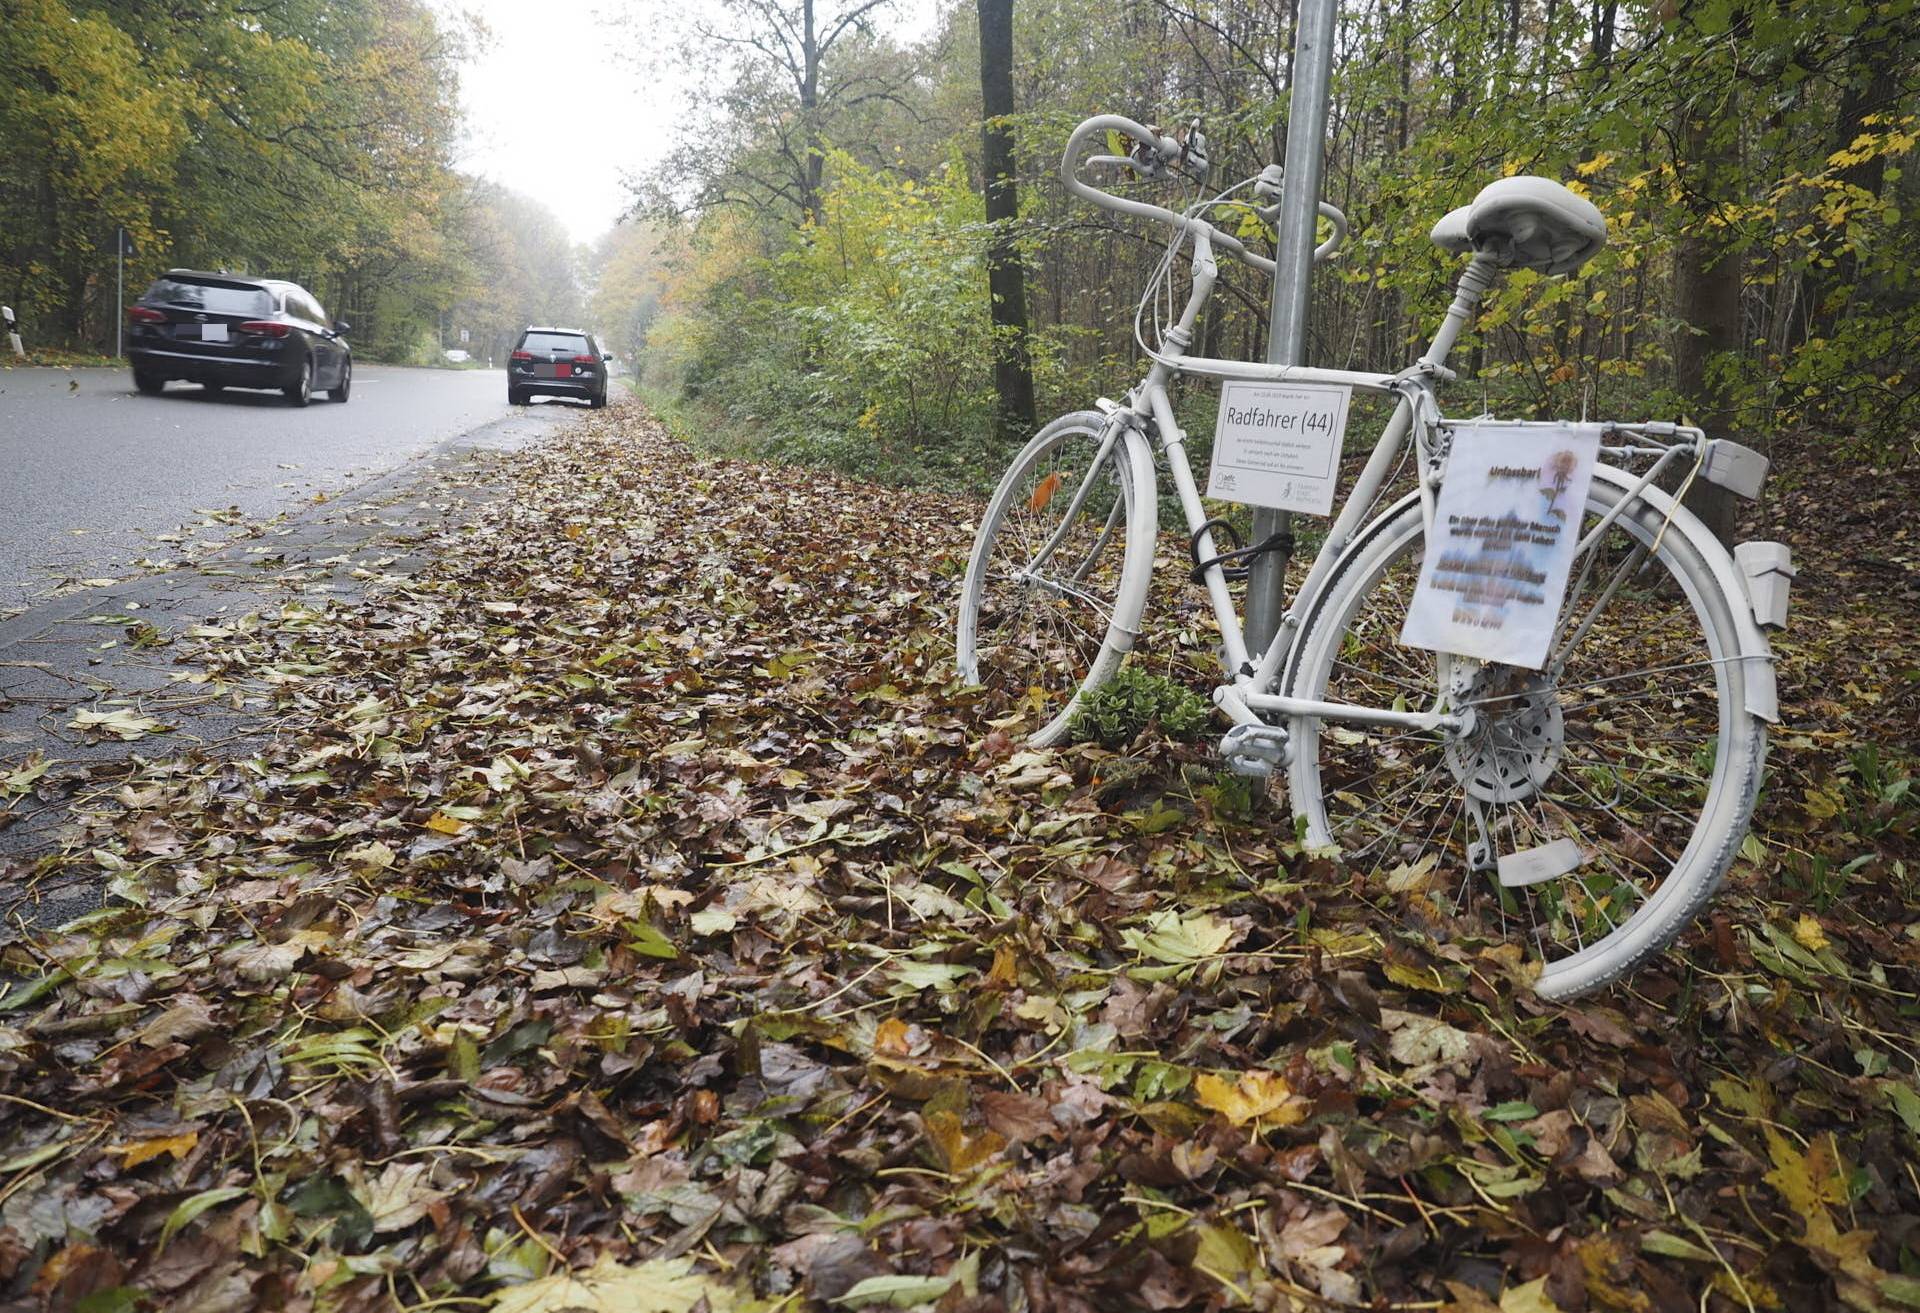  Ein weißes Fahrrad erinnert an die Stelle, an der ein Mensch starb. 